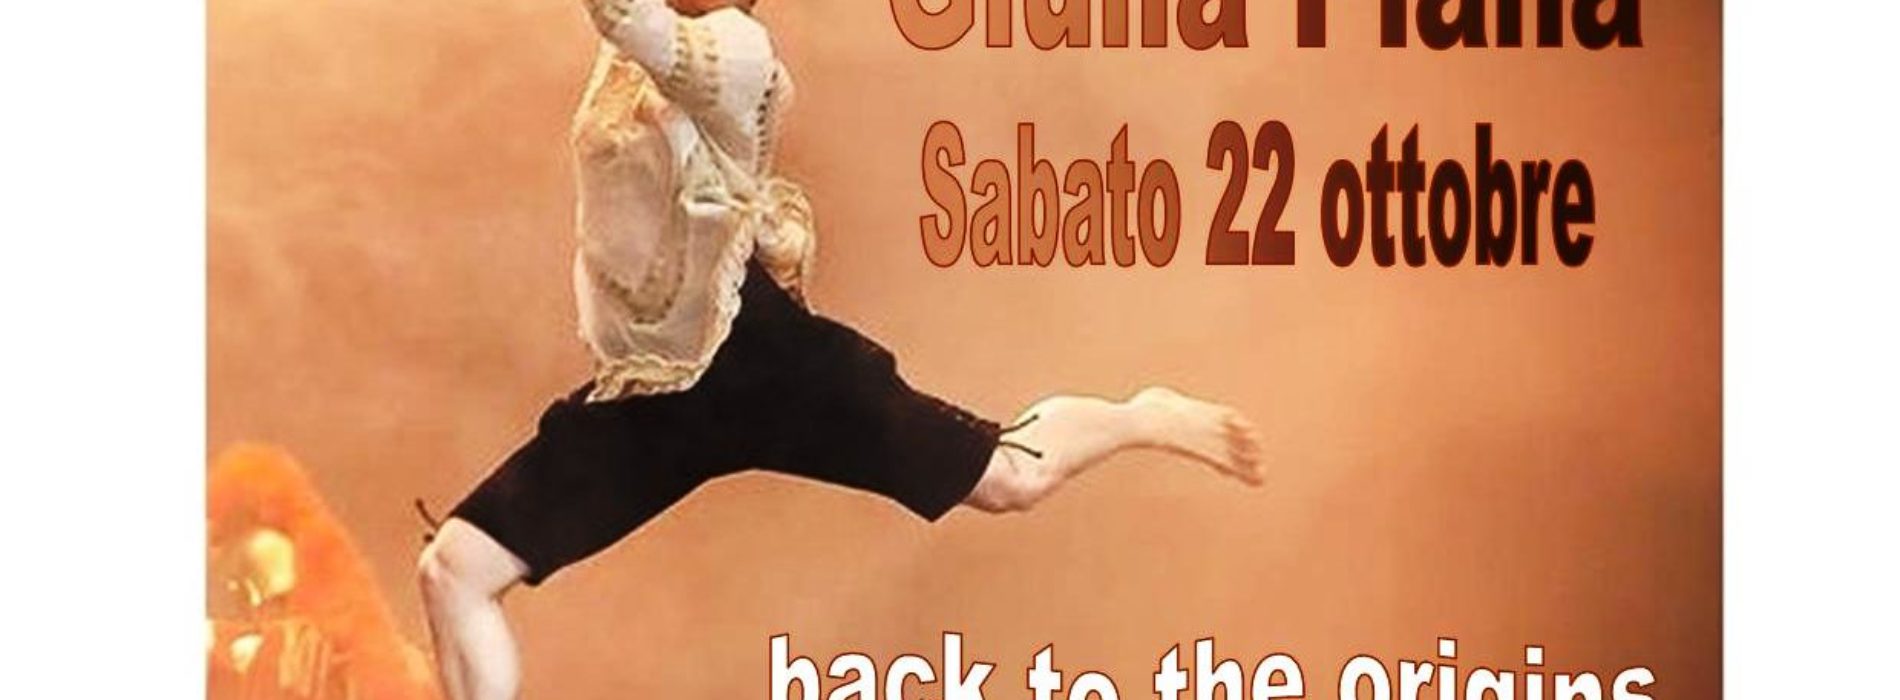 Allo Shotokan Club parte il progetto “back to the origins” con lo stage di floorwork con Giulia Piana